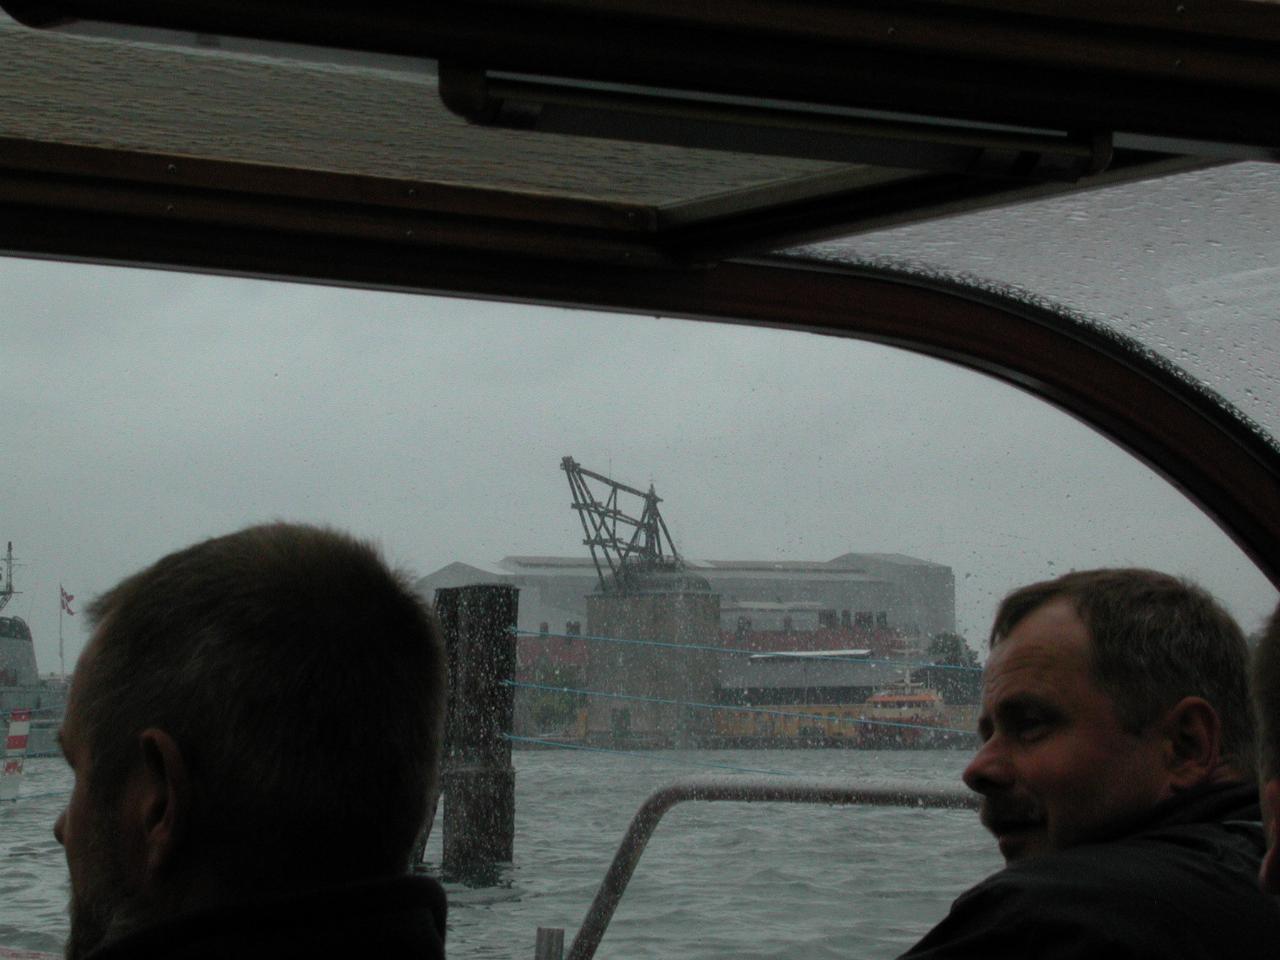 KPLU Viking Jazz: Old Navy crane as seen from tour boat